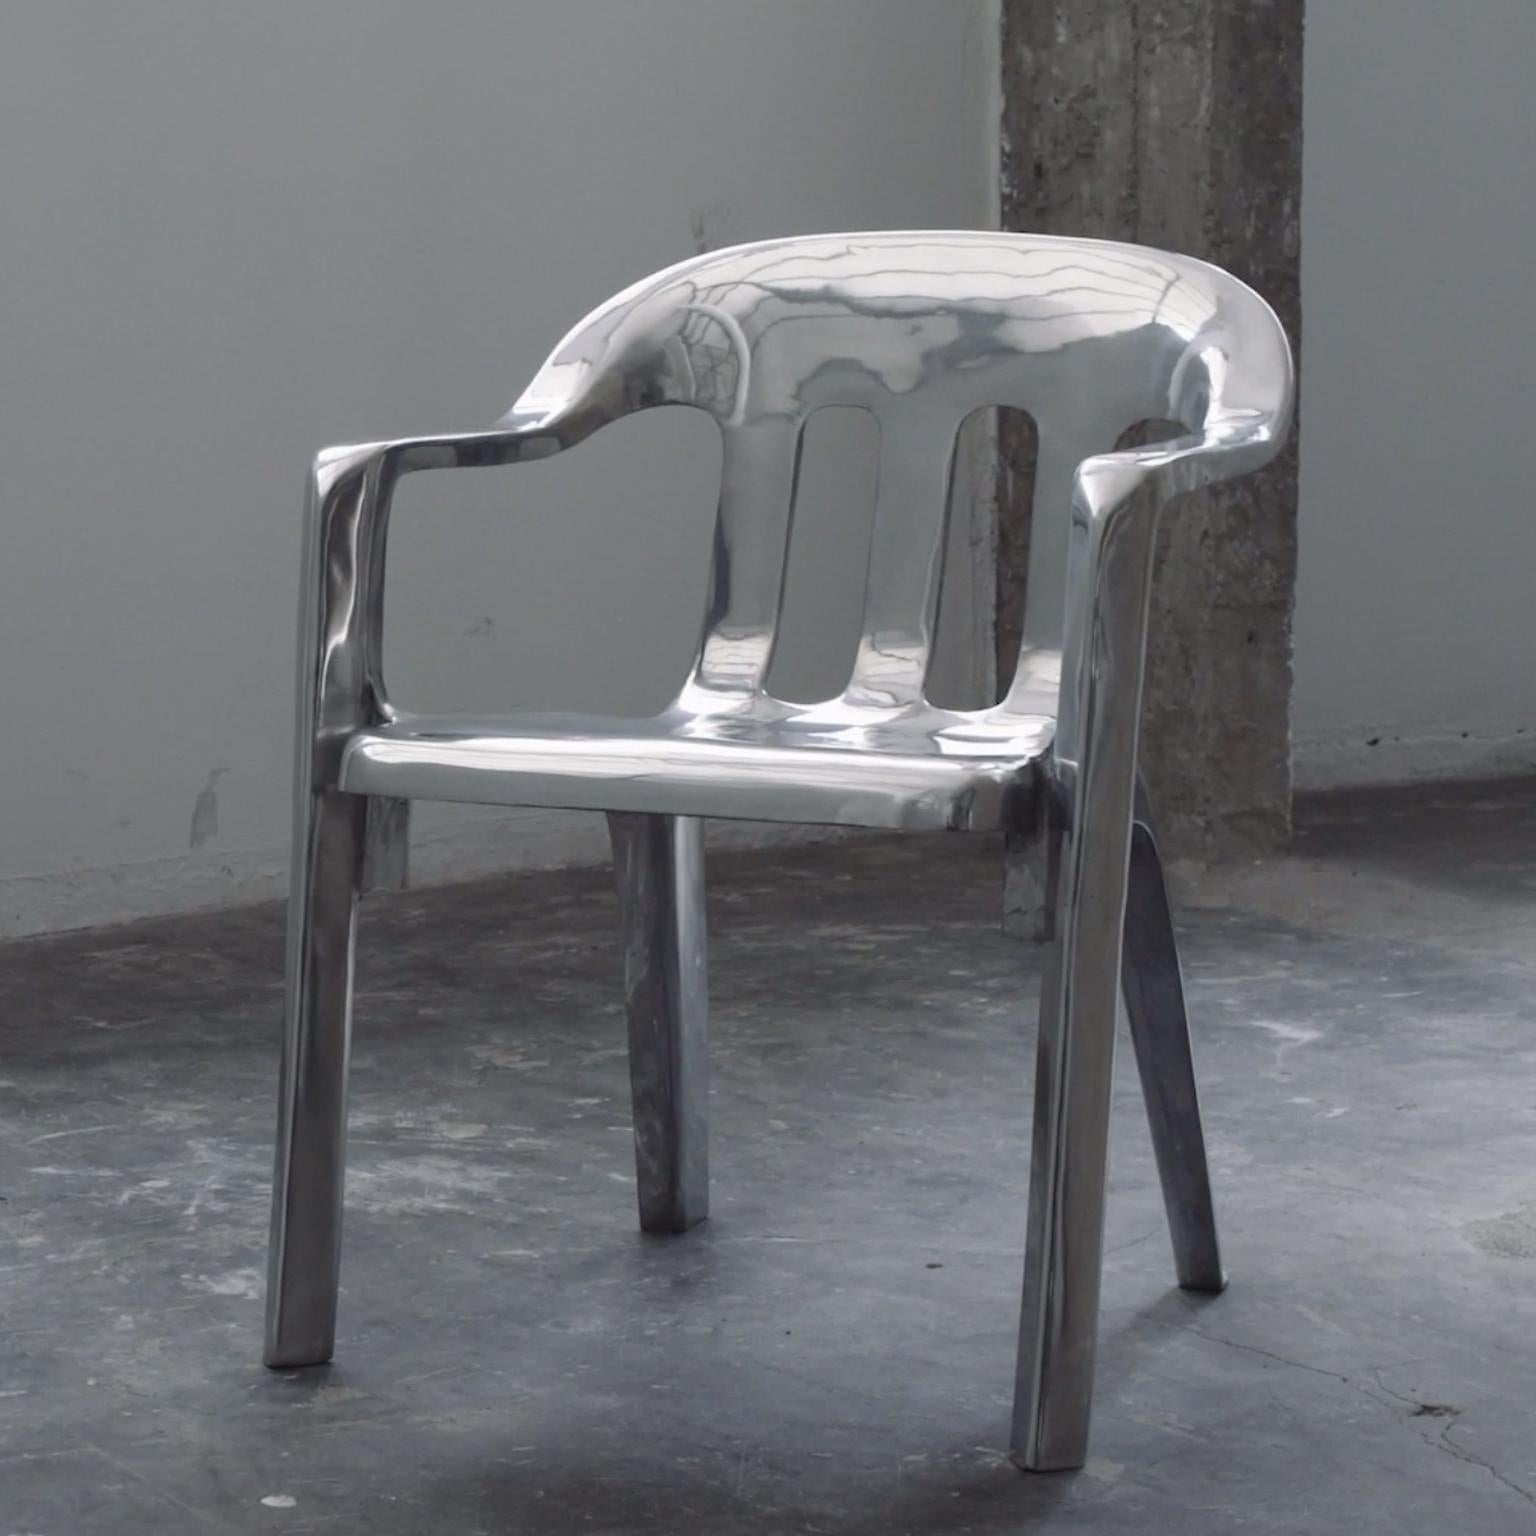 cast aluminum chair